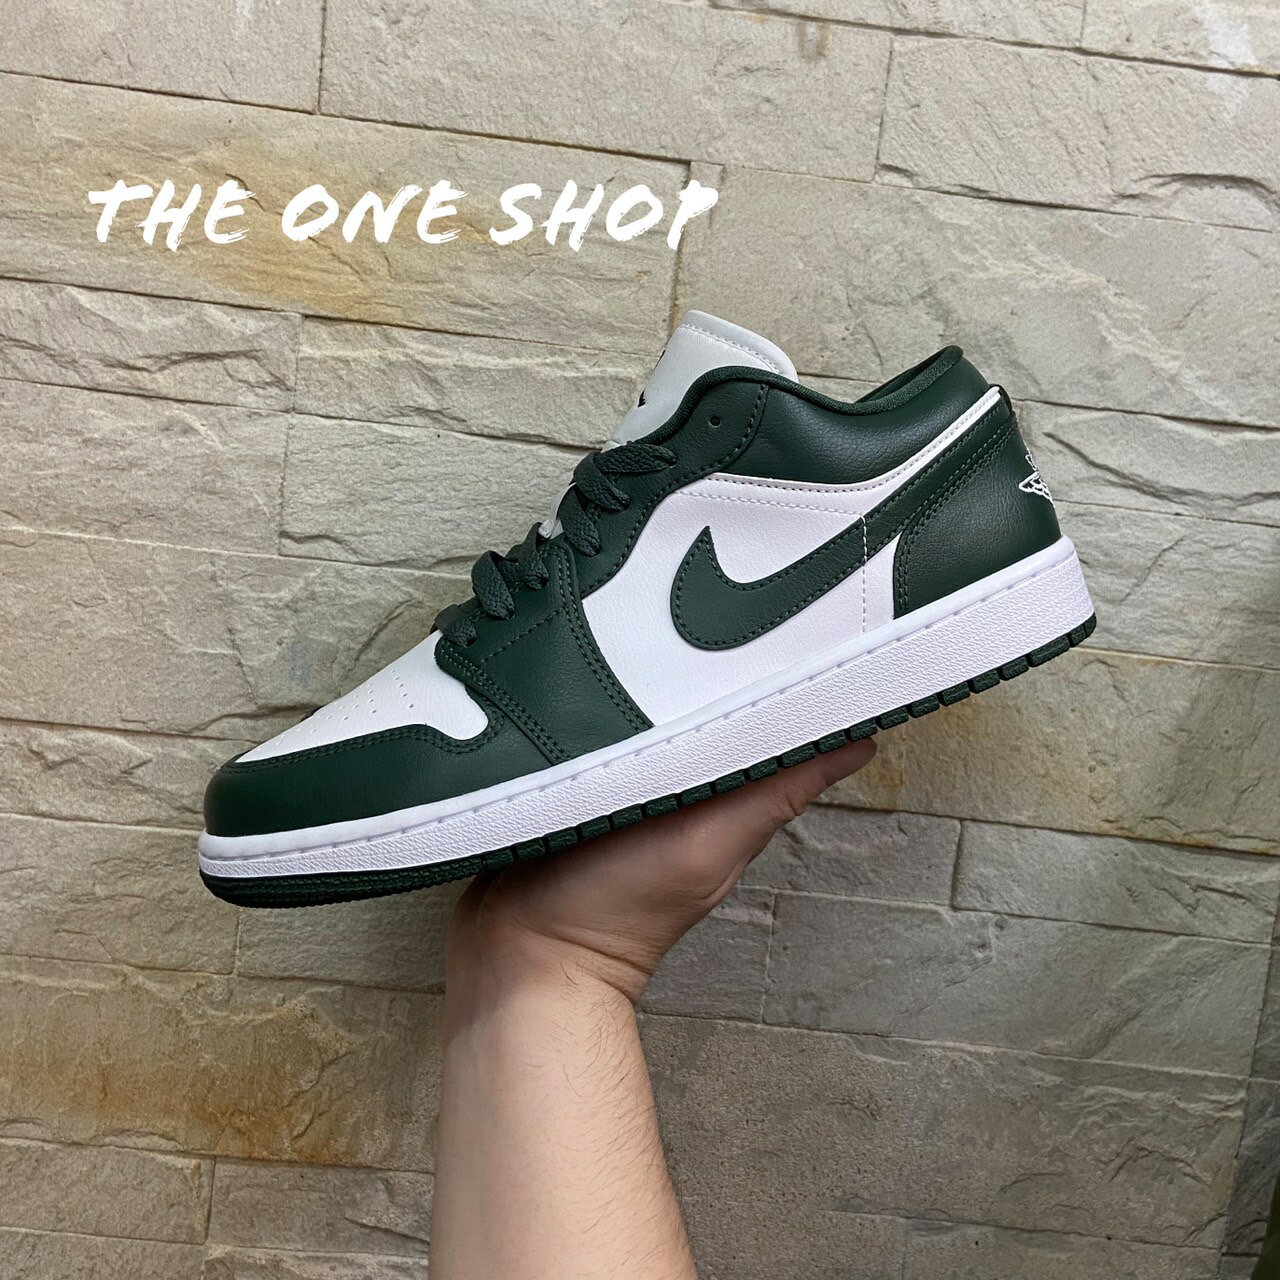 TheOneShop Air Jordan 1 深綠 綠色 白綠 1代 低筒 皮革 籃球鞋 DC0774-113